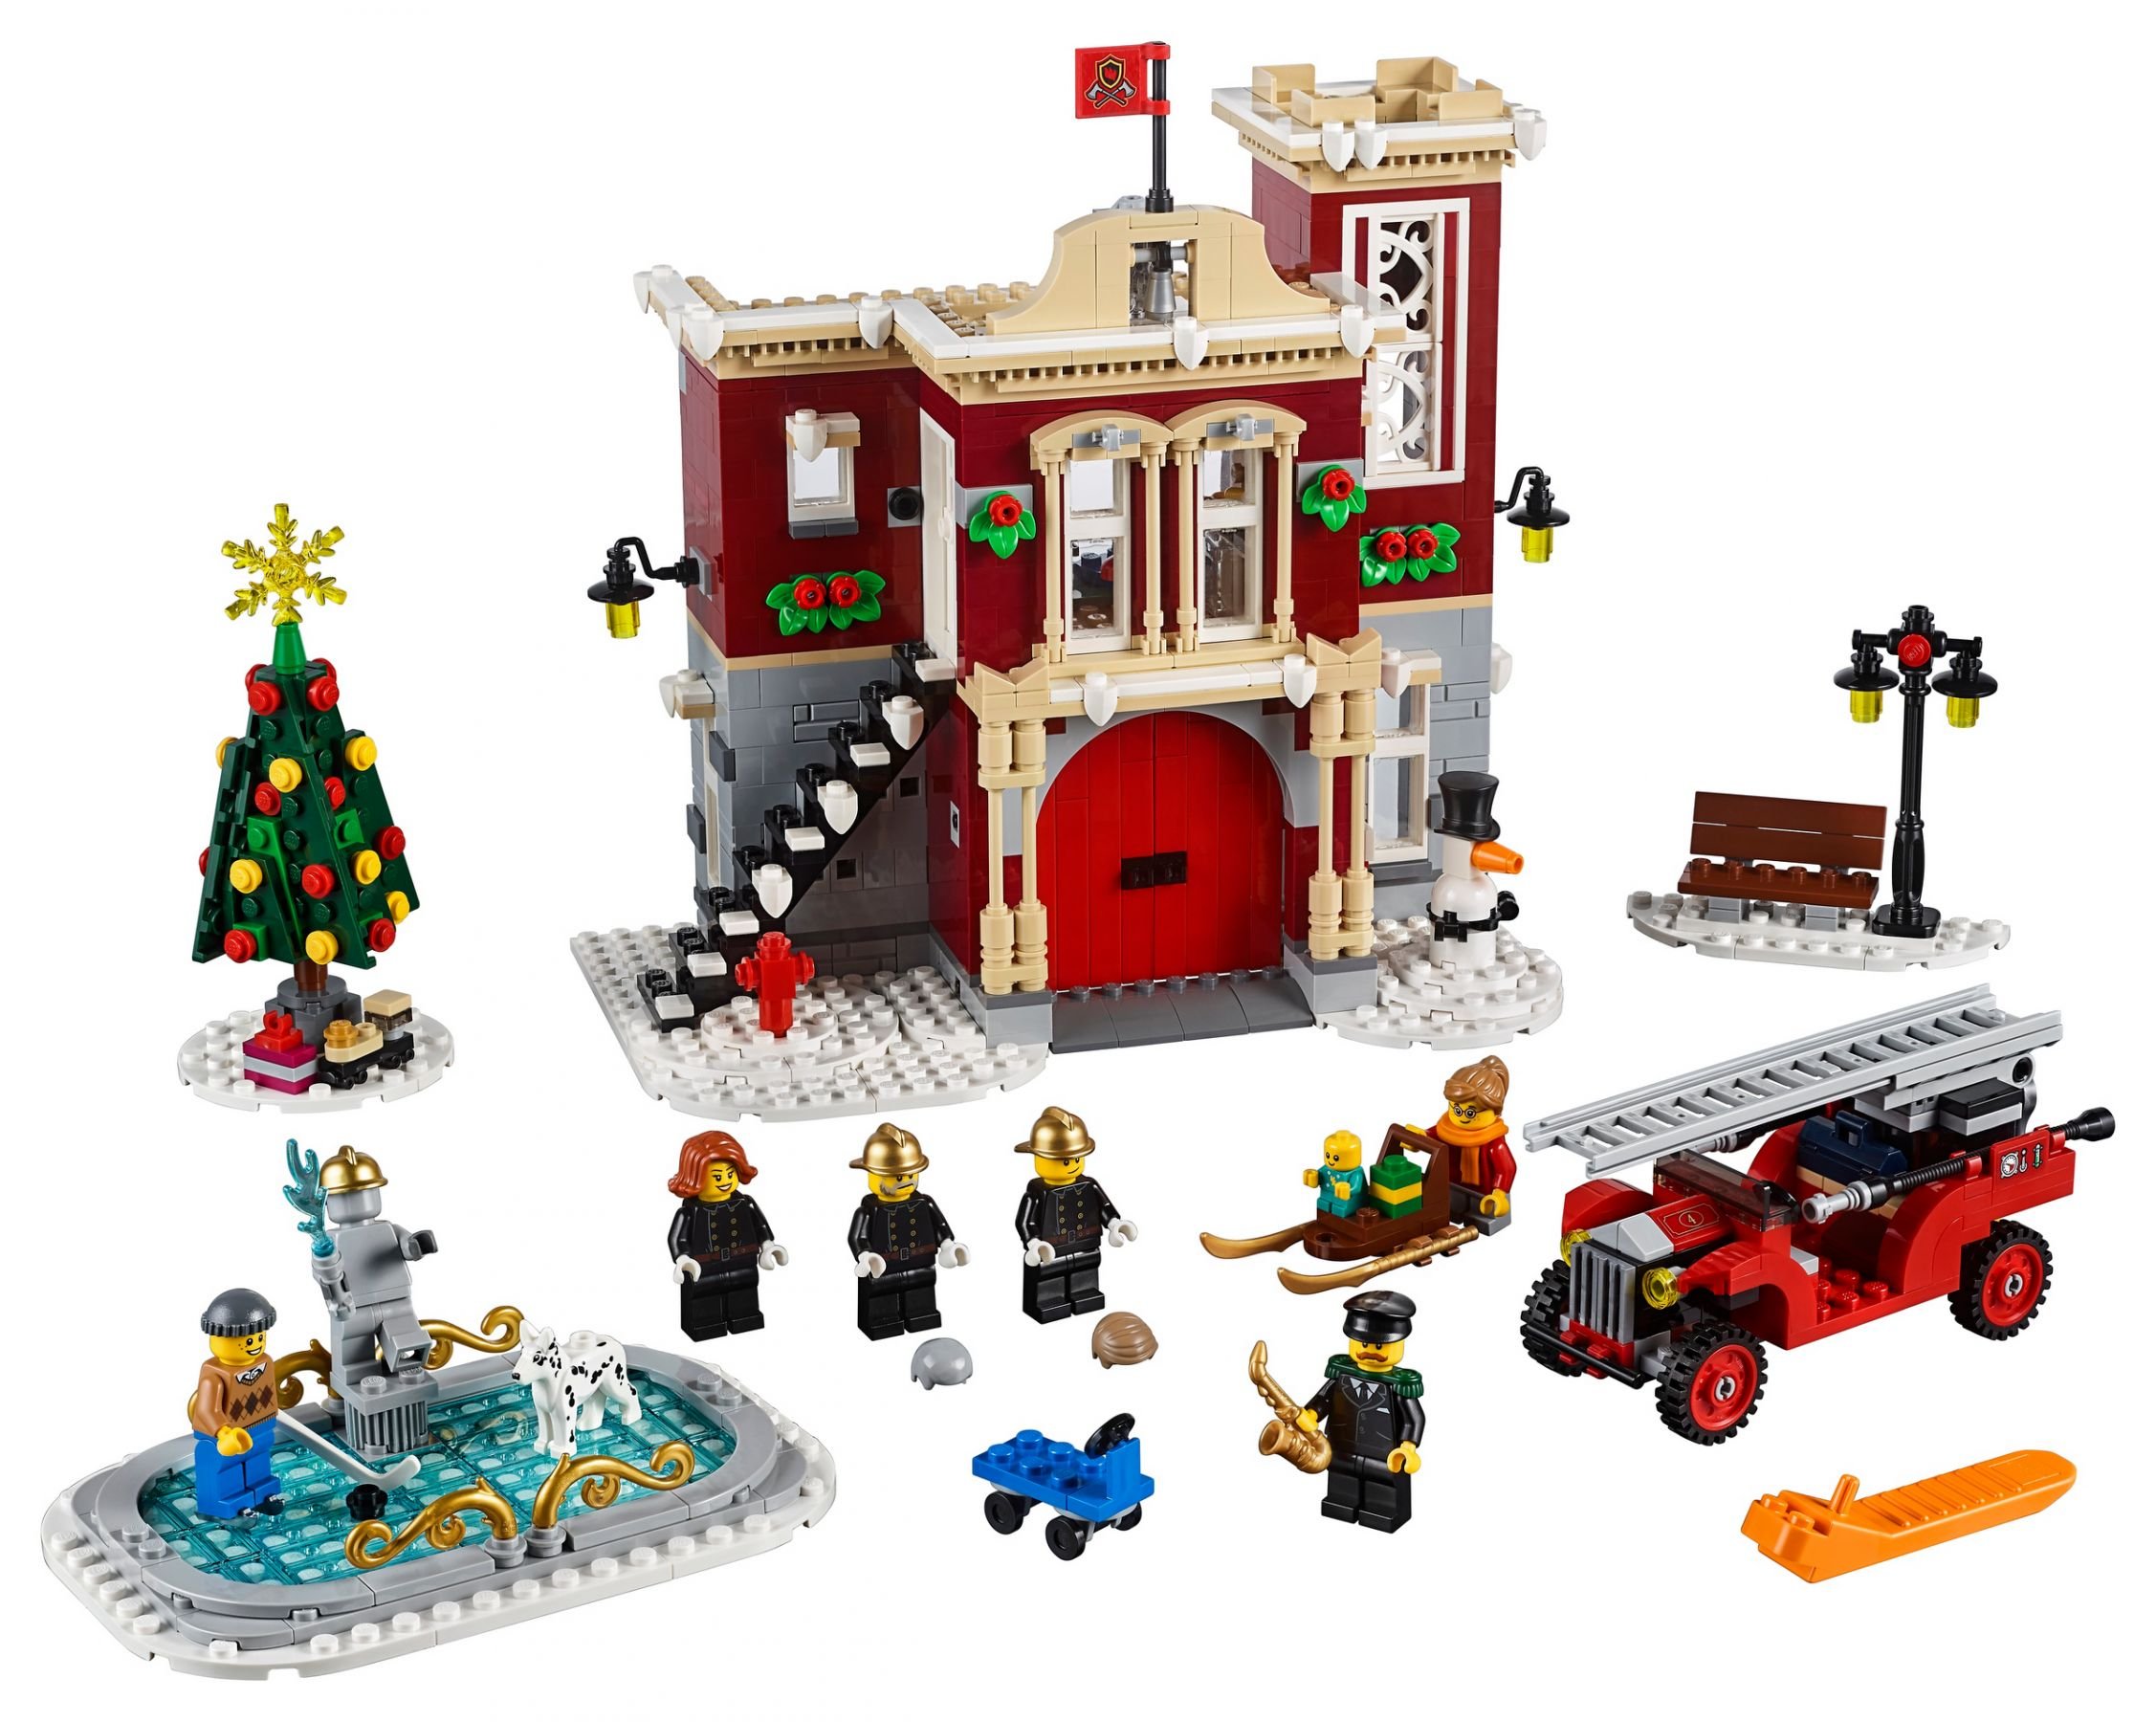 LEGO Advanced Models 10263 Winterliche Feuerwehrstation